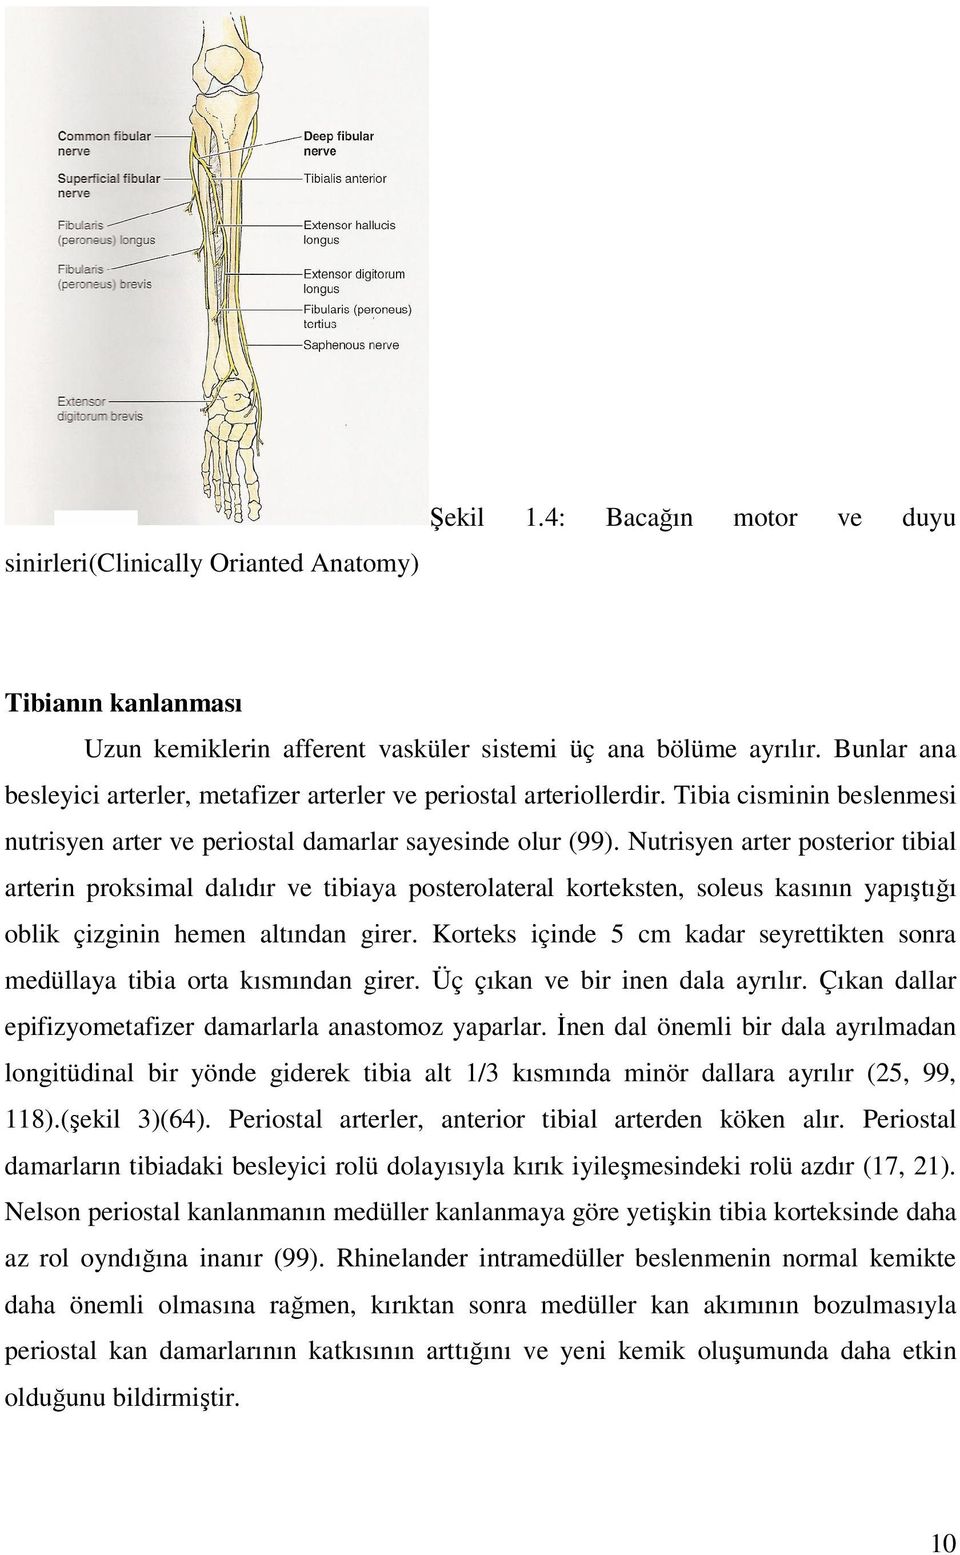 Nutrisyen arter posterior tibial arterin proksimal dalıdır ve tibiaya posterolateral korteksten, soleus kasının yapıştığı oblik çizginin hemen altından girer.